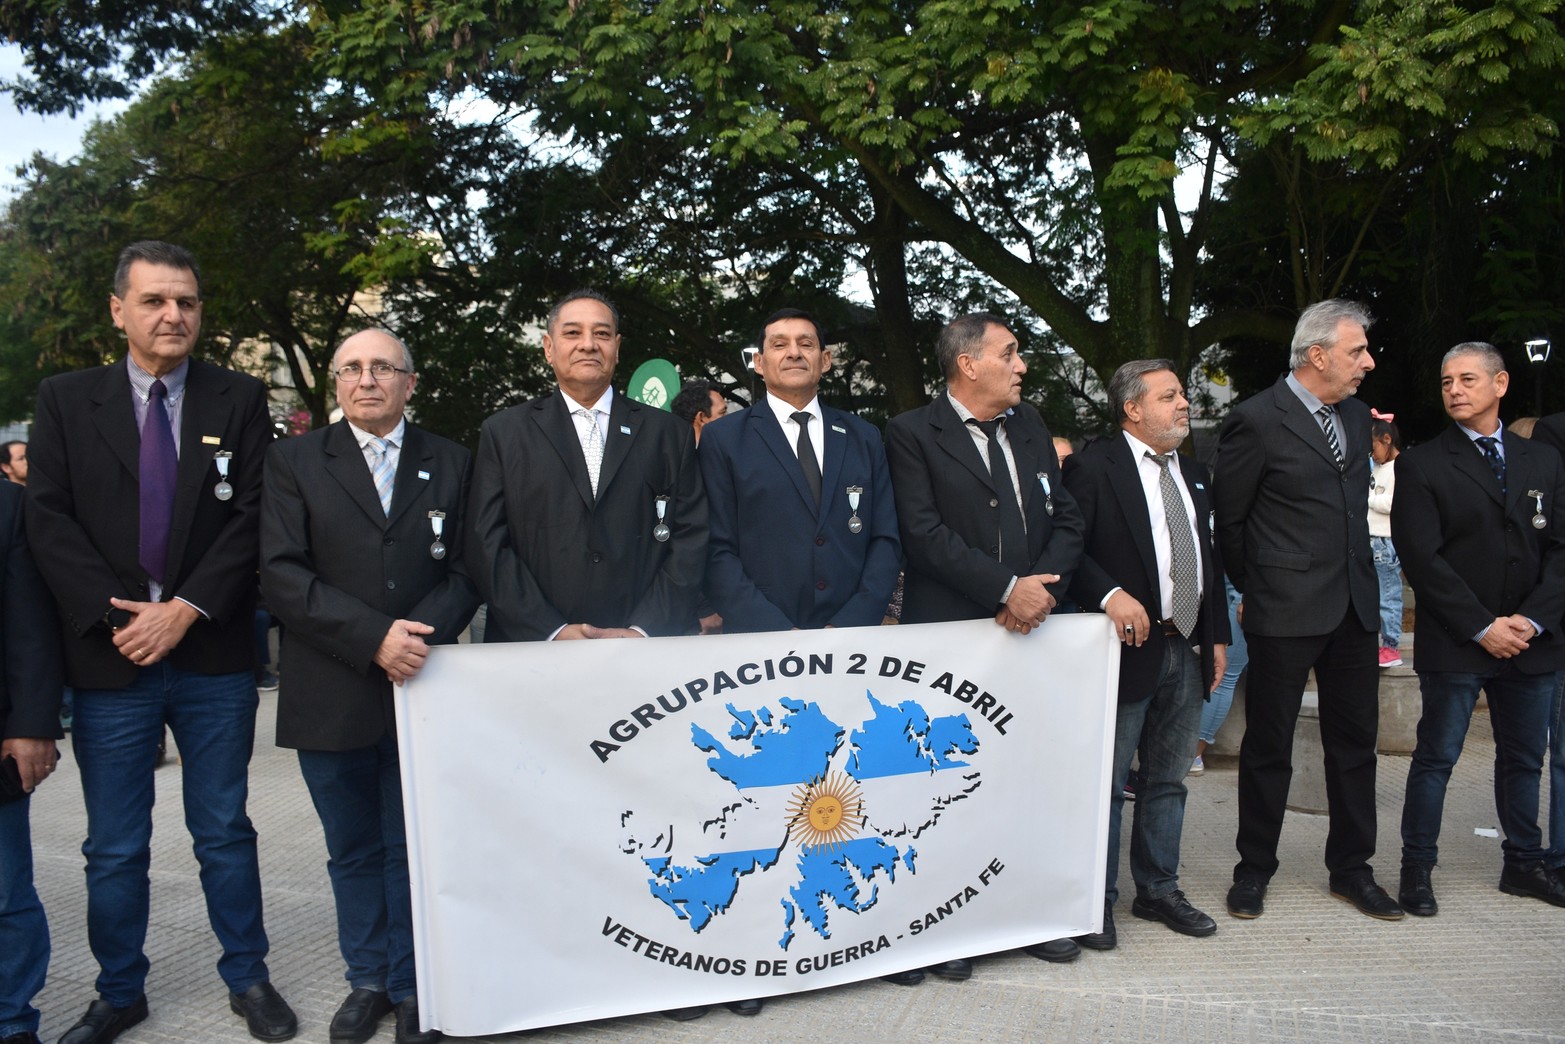 Acto de inauguración de la remozada Plaza del Soldado Argentino.
Foto: Manuel Fabatía